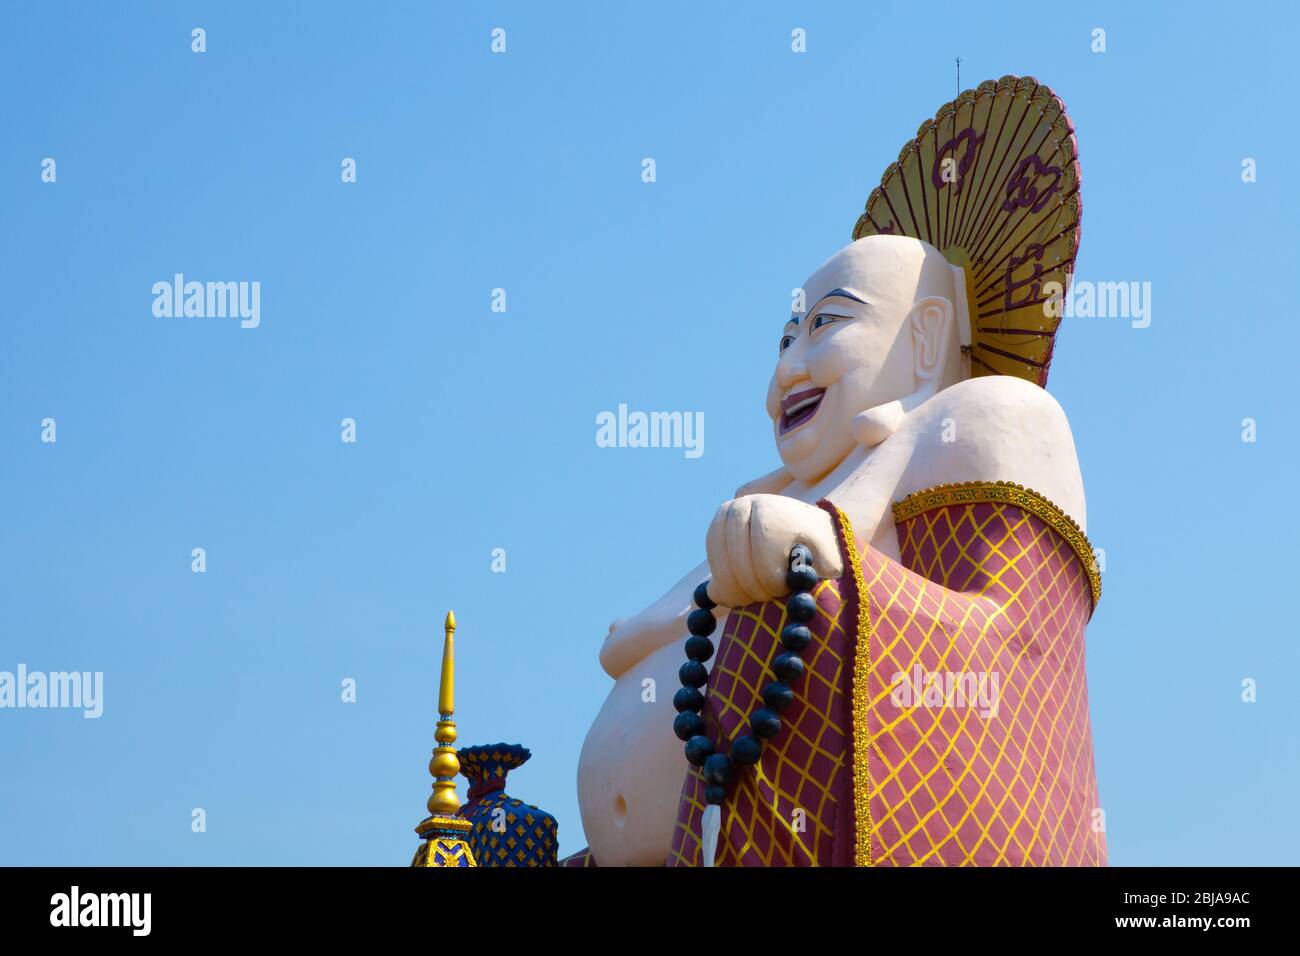 Temple Wat Plai Laem, Ko Samui, Thaïlande Banque D'Images